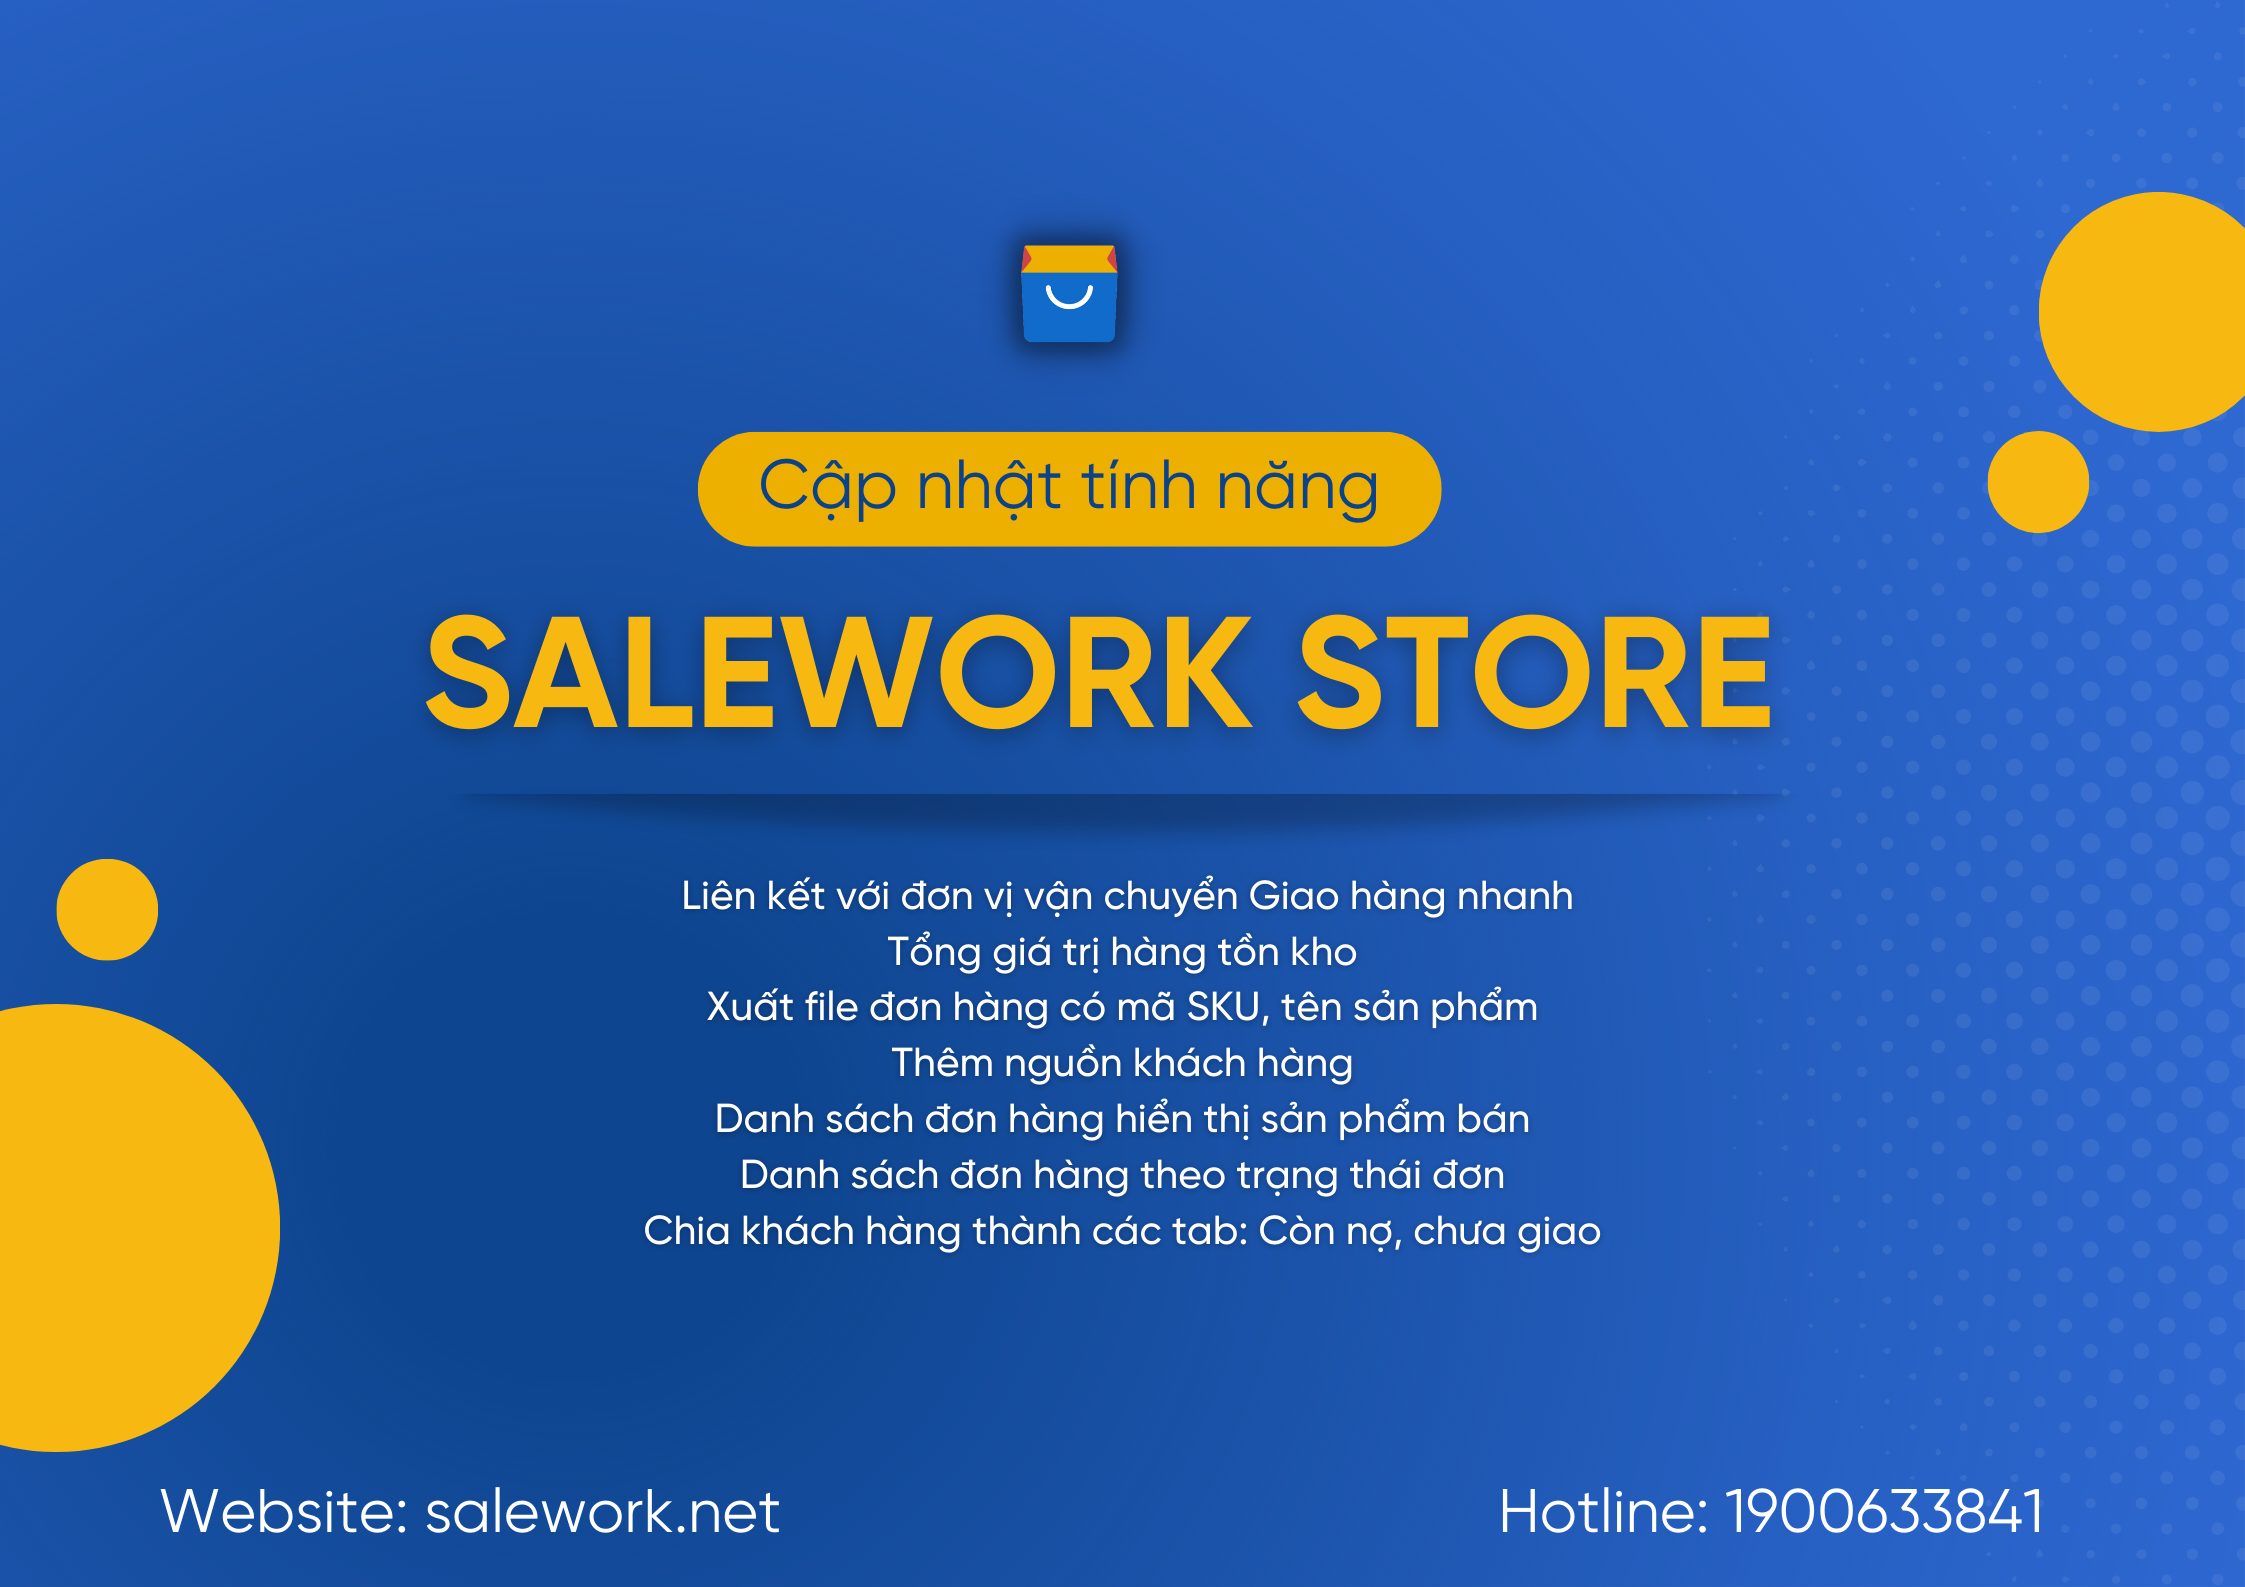 [ Thông báo] Salework Store cập nhật phần mềm - 10